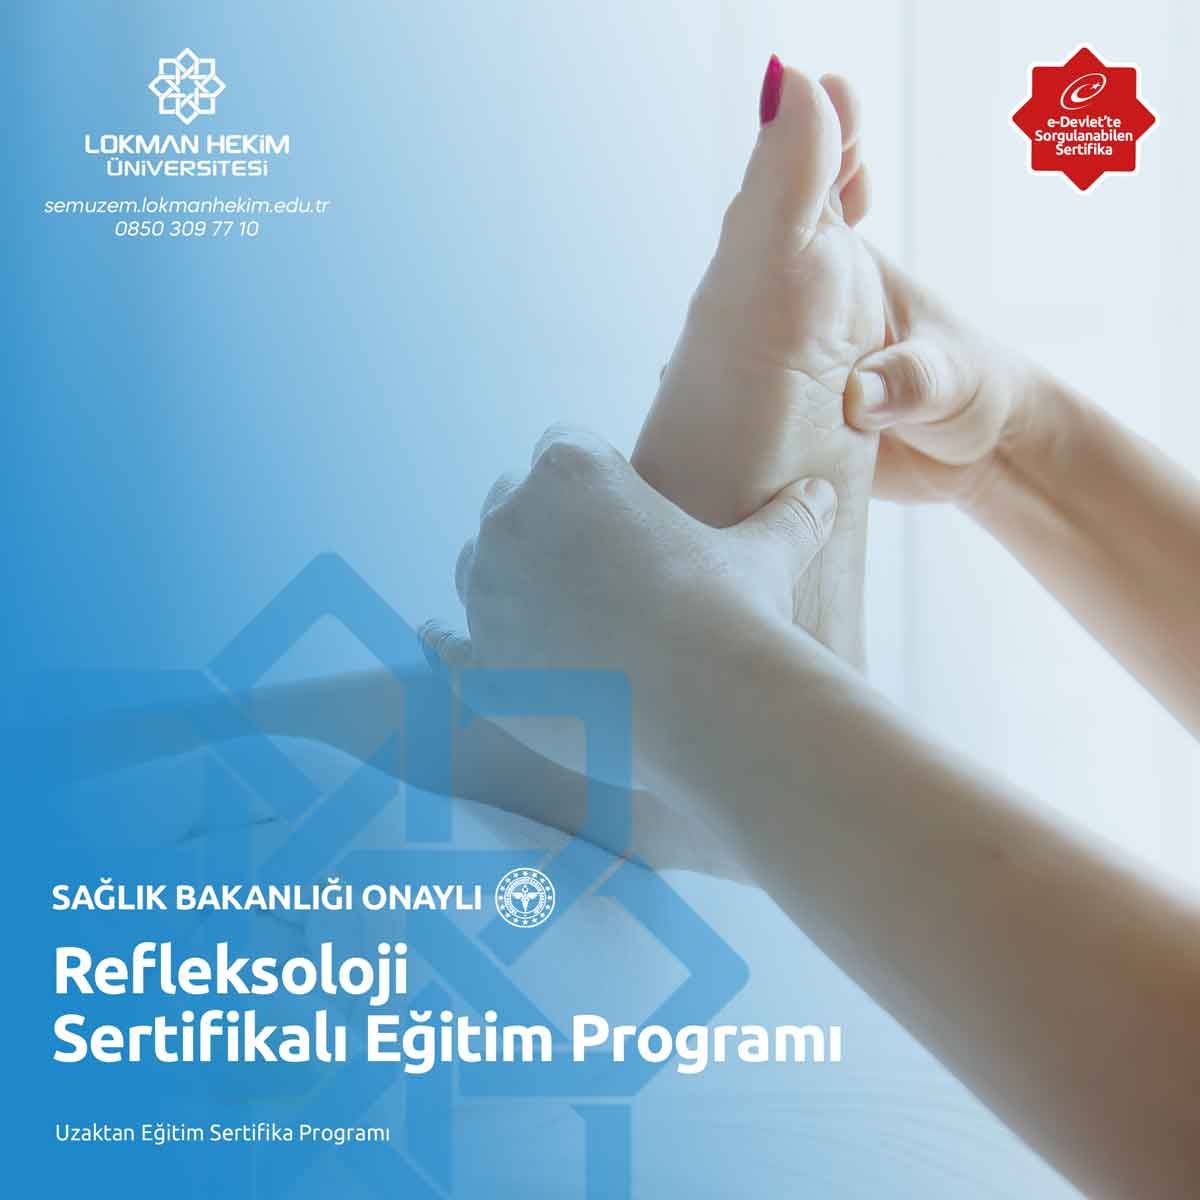 Refleksoloji Sertifikalı Eğitim Programı